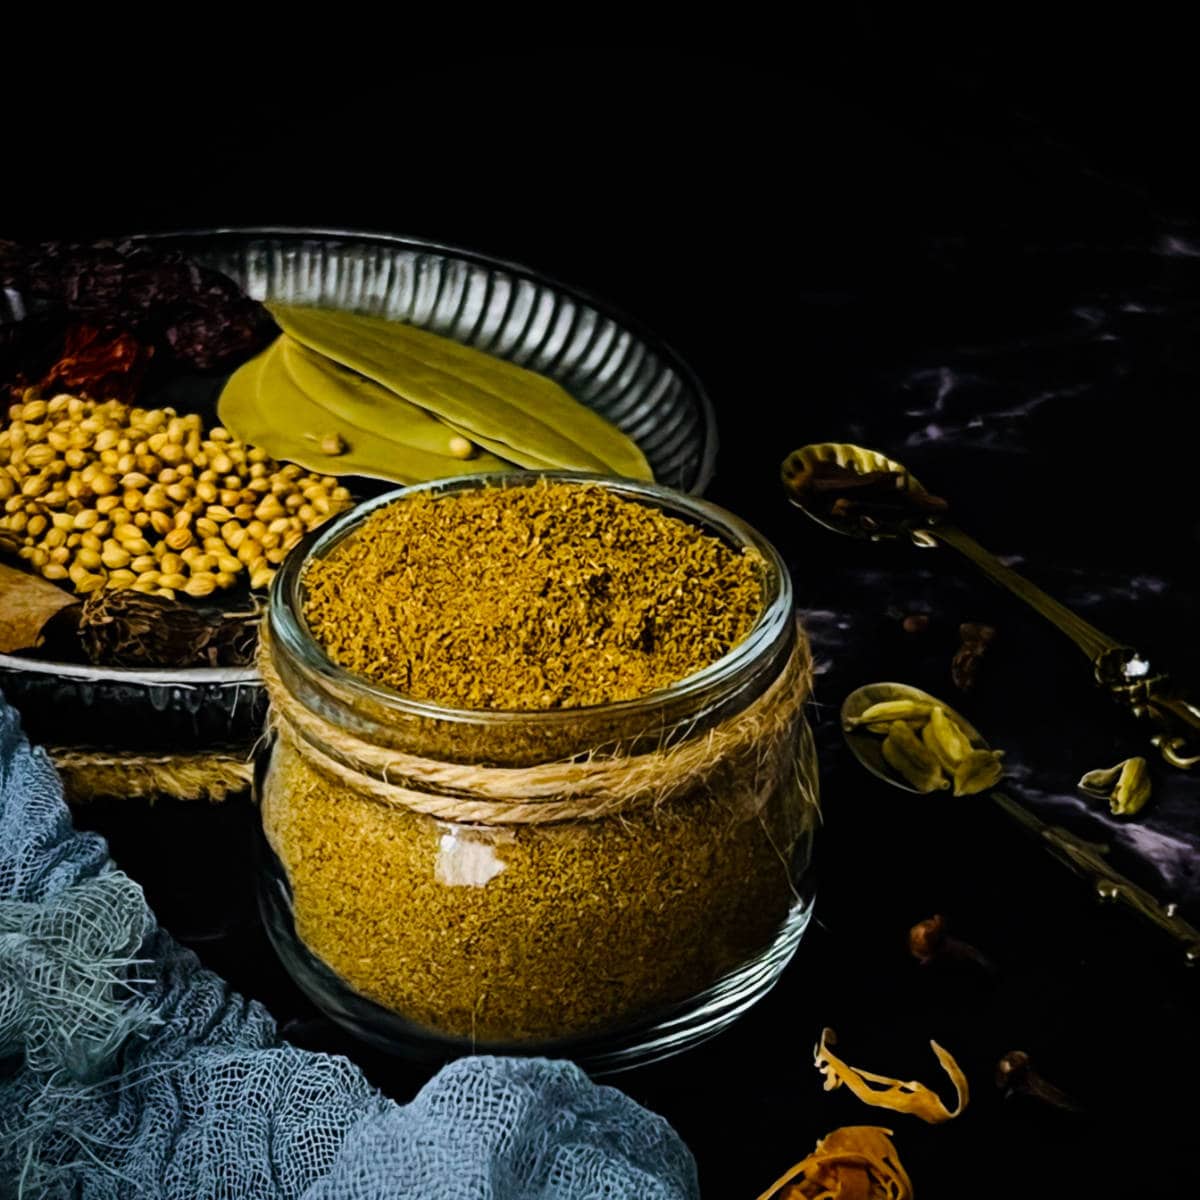 Crafting Garam Masala at Home: Spice Things Up